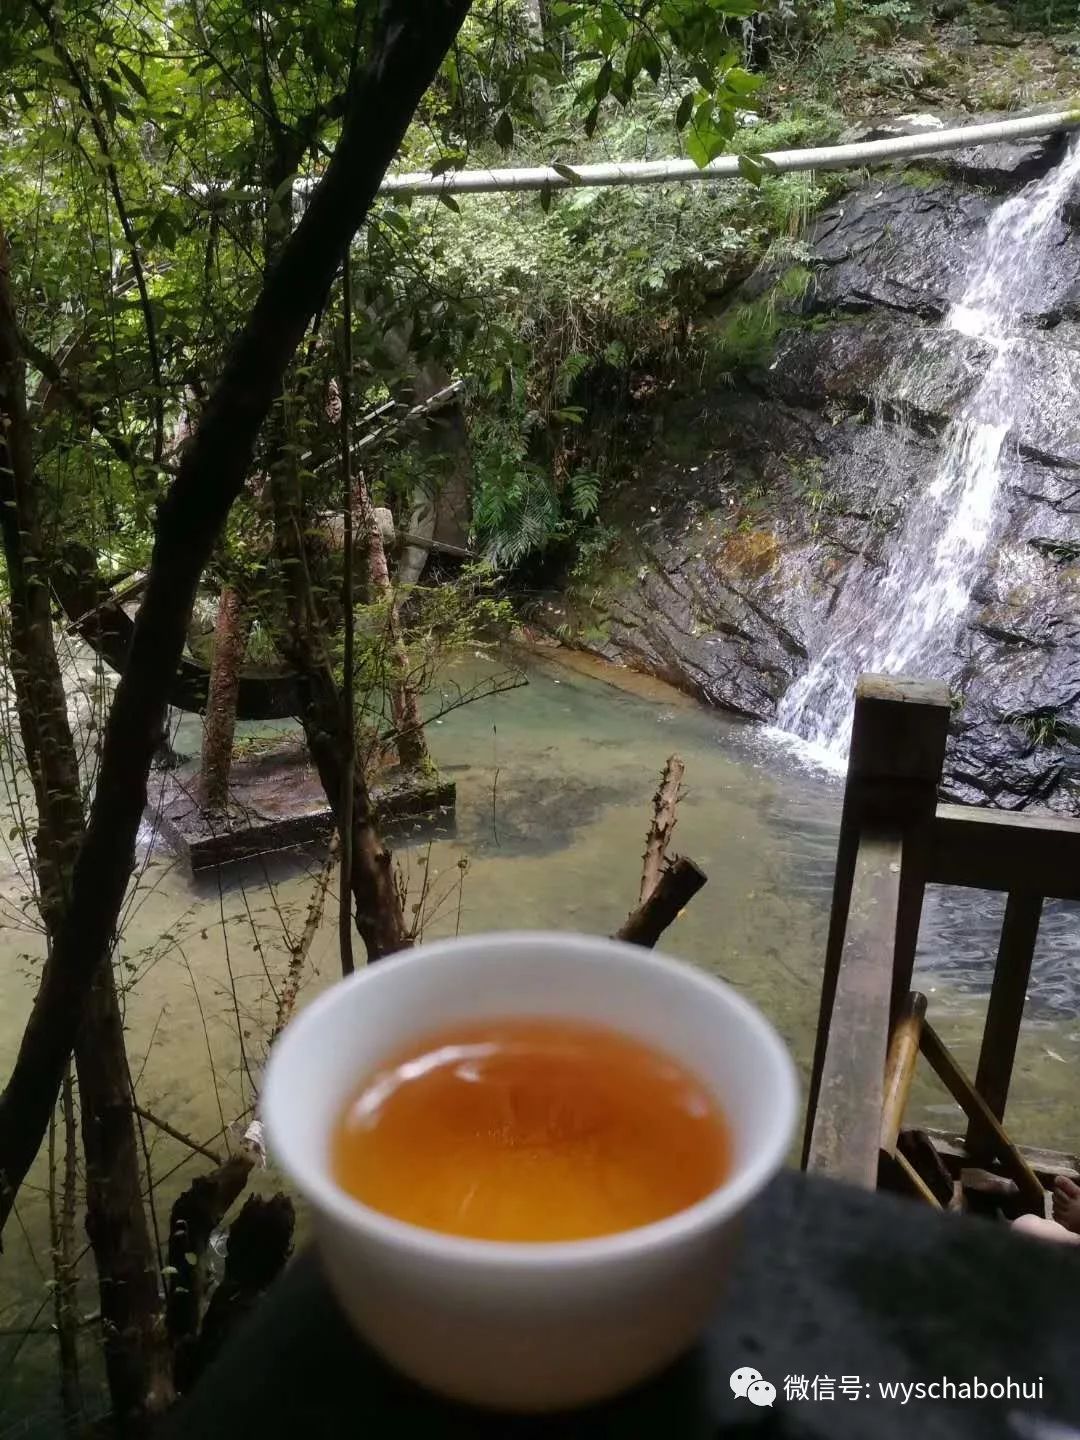 茶与水的邂逅，泡岩茶用什么水适合